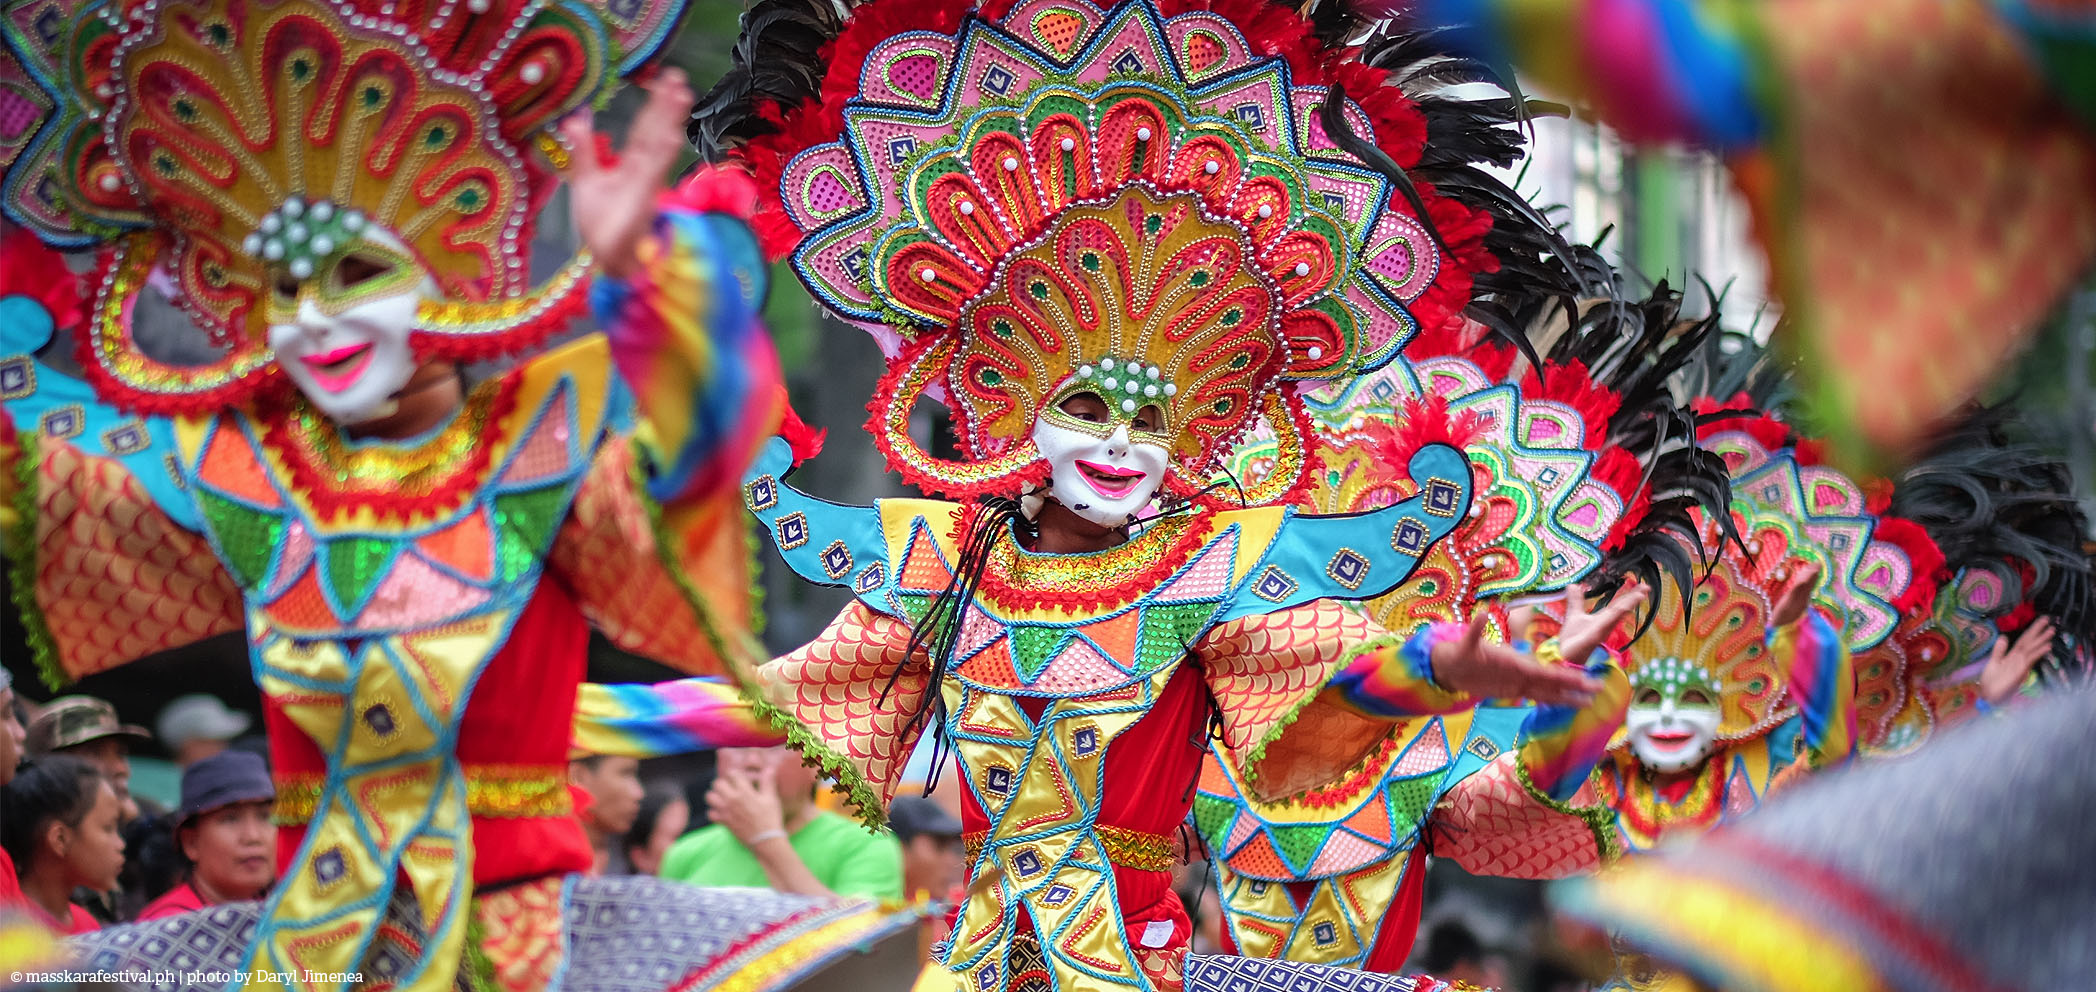 ネグレスコ島バコロドで開催されるマスカラ・フェスティバル